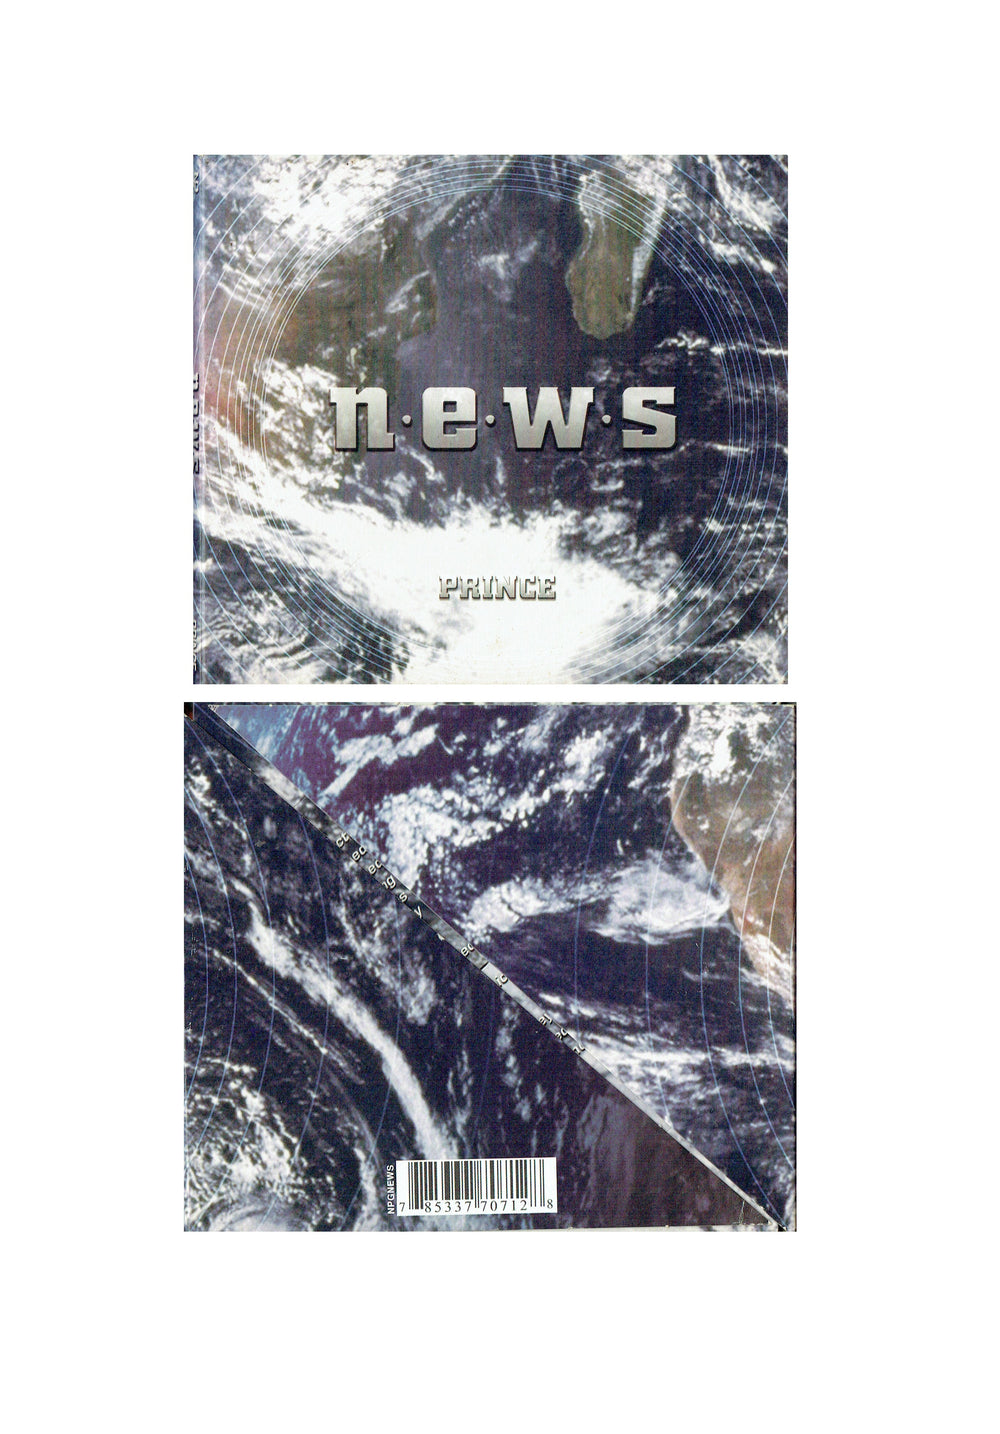 Prince – N.E.W.S CD Album 2003 Original 4 Tracks Fold Out Case NPG Records